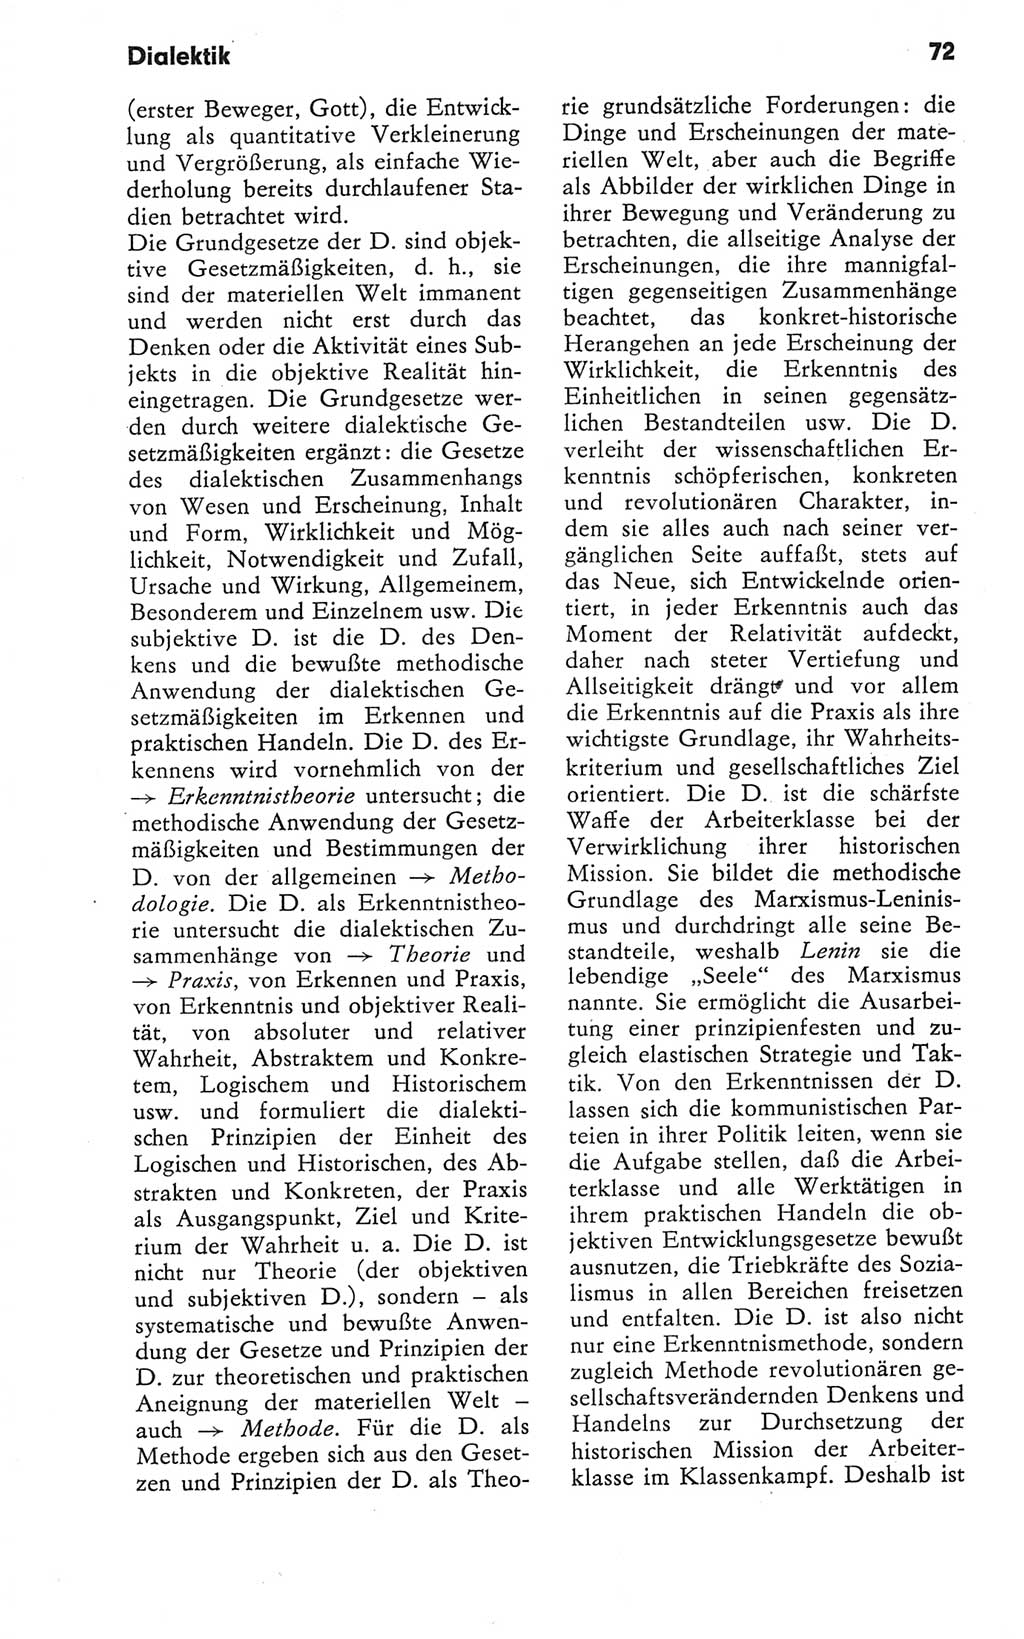 Kleines Wörterbuch der marxistisch-leninistischen Philosophie [Deutsche Demokratische Republik (DDR)] 1979, Seite 72 (Kl. Wb. ML Phil. DDR 1979, S. 72)